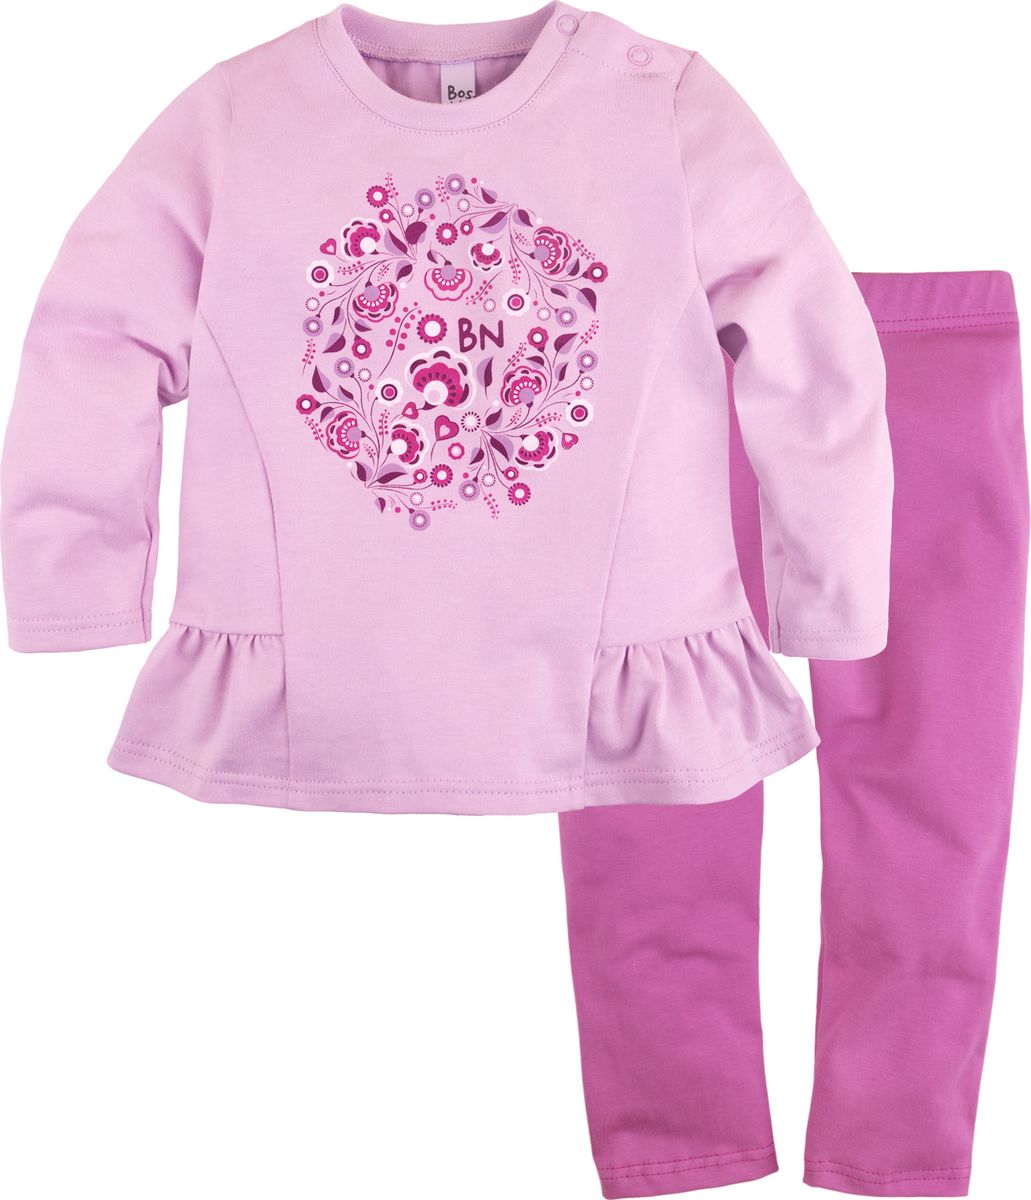 Комплект одежды для новорожденных Bossa Nova Клюква: туника и лосины, цвет: сиреневый. 084Б-161с. Размер 86